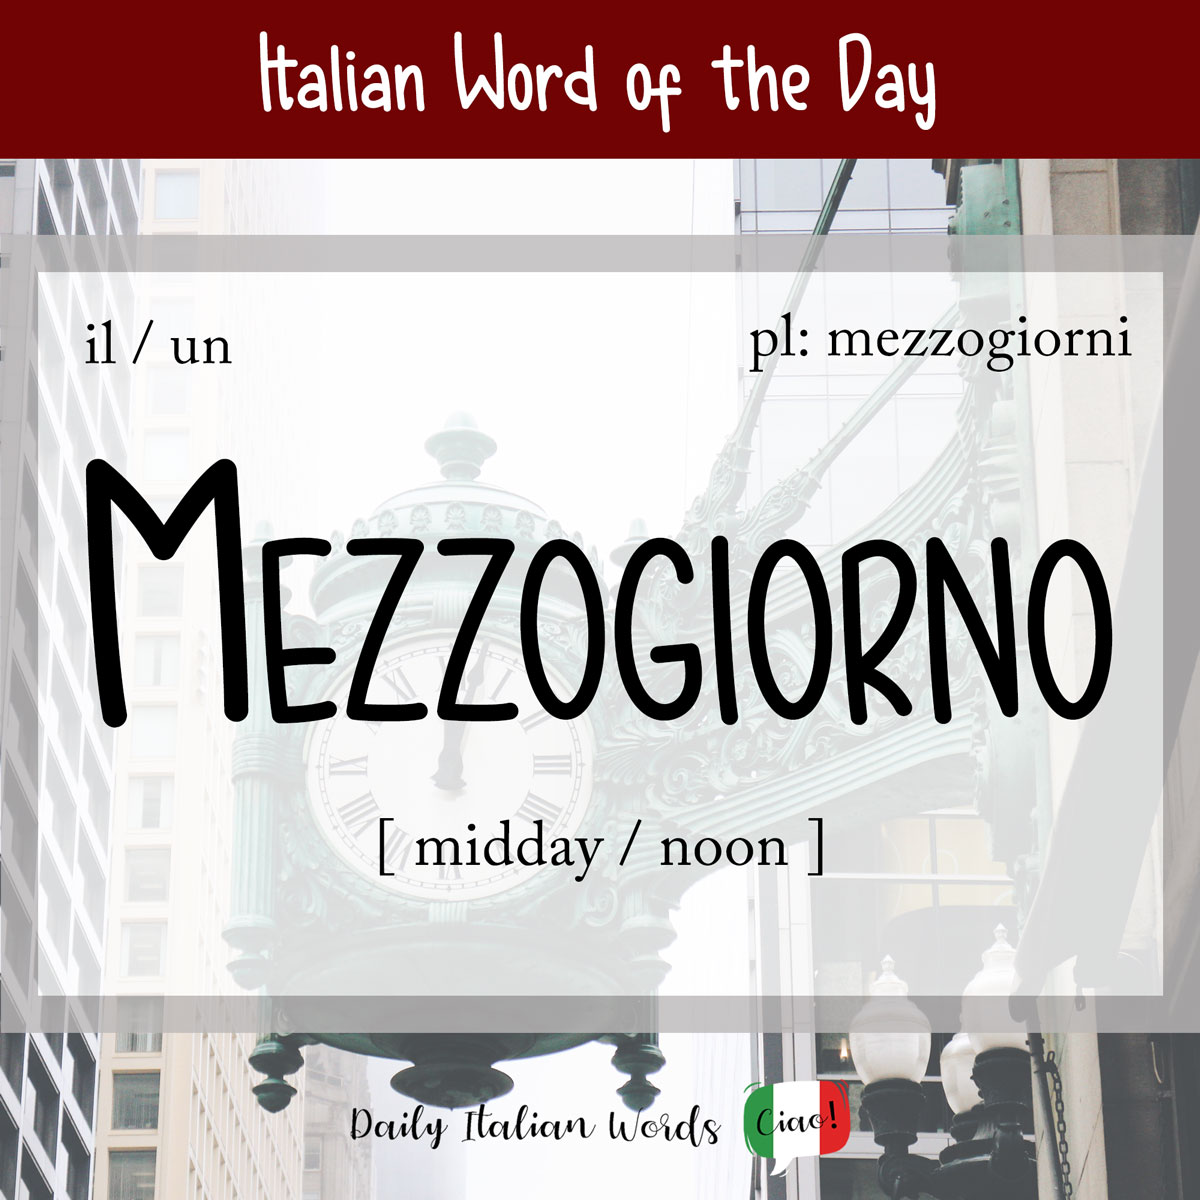 Italian word of the day: Mezzogiorno (noon/noon)